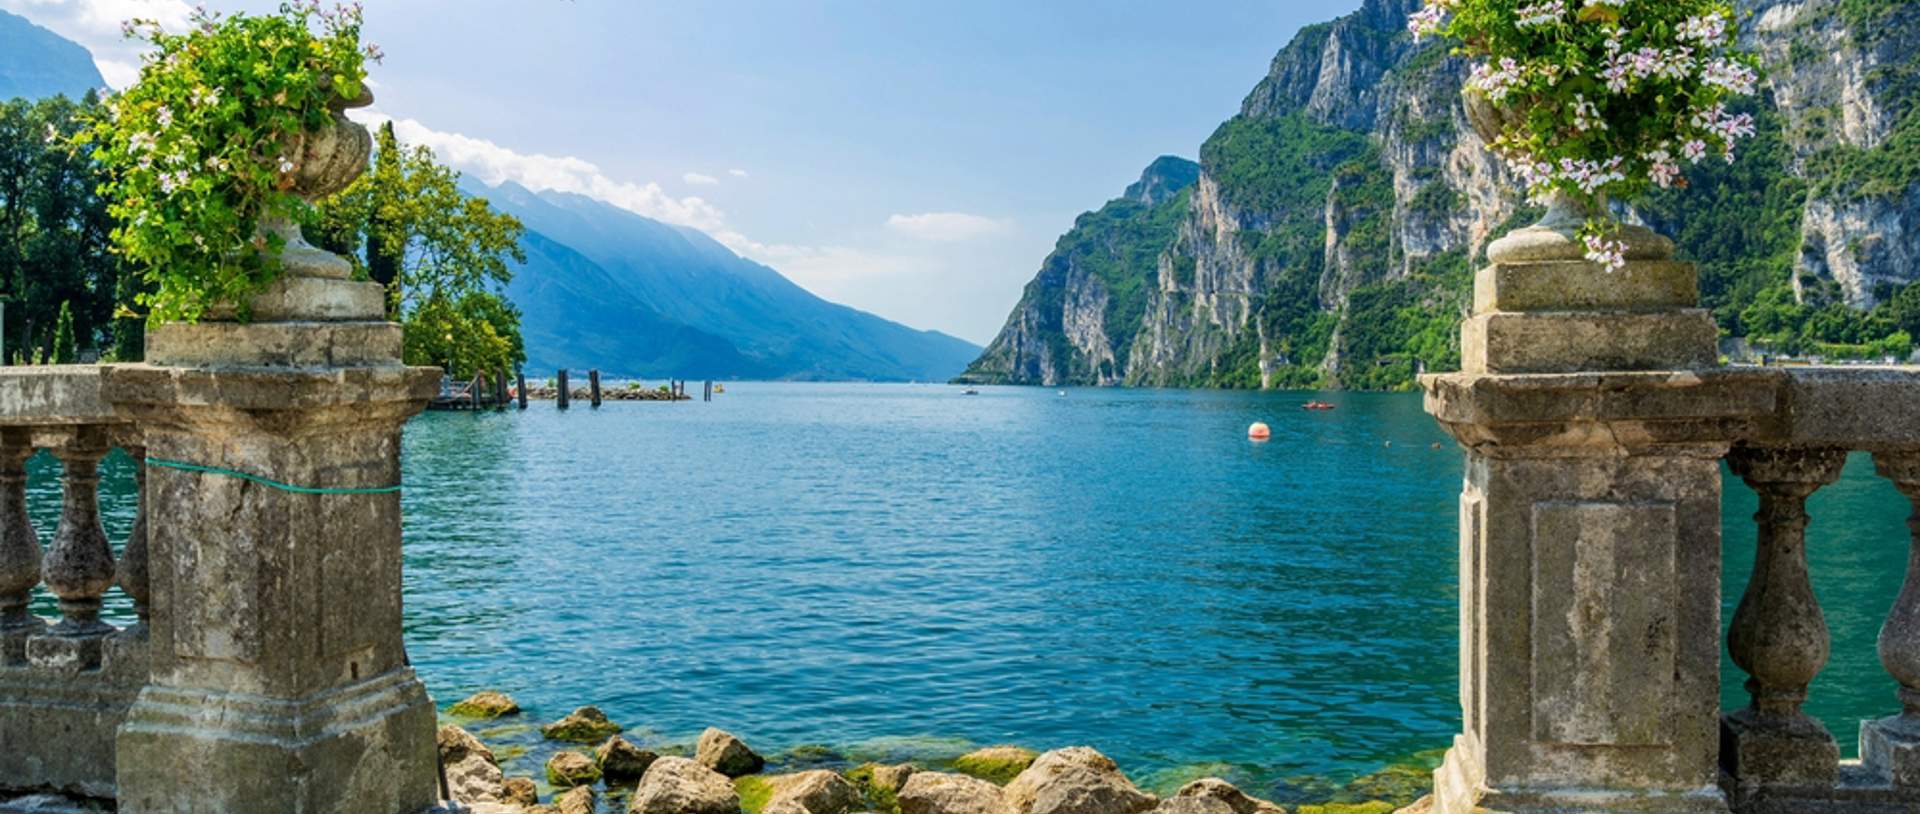 Riva Del Garda, Trentino, Italy, By Garda Lake